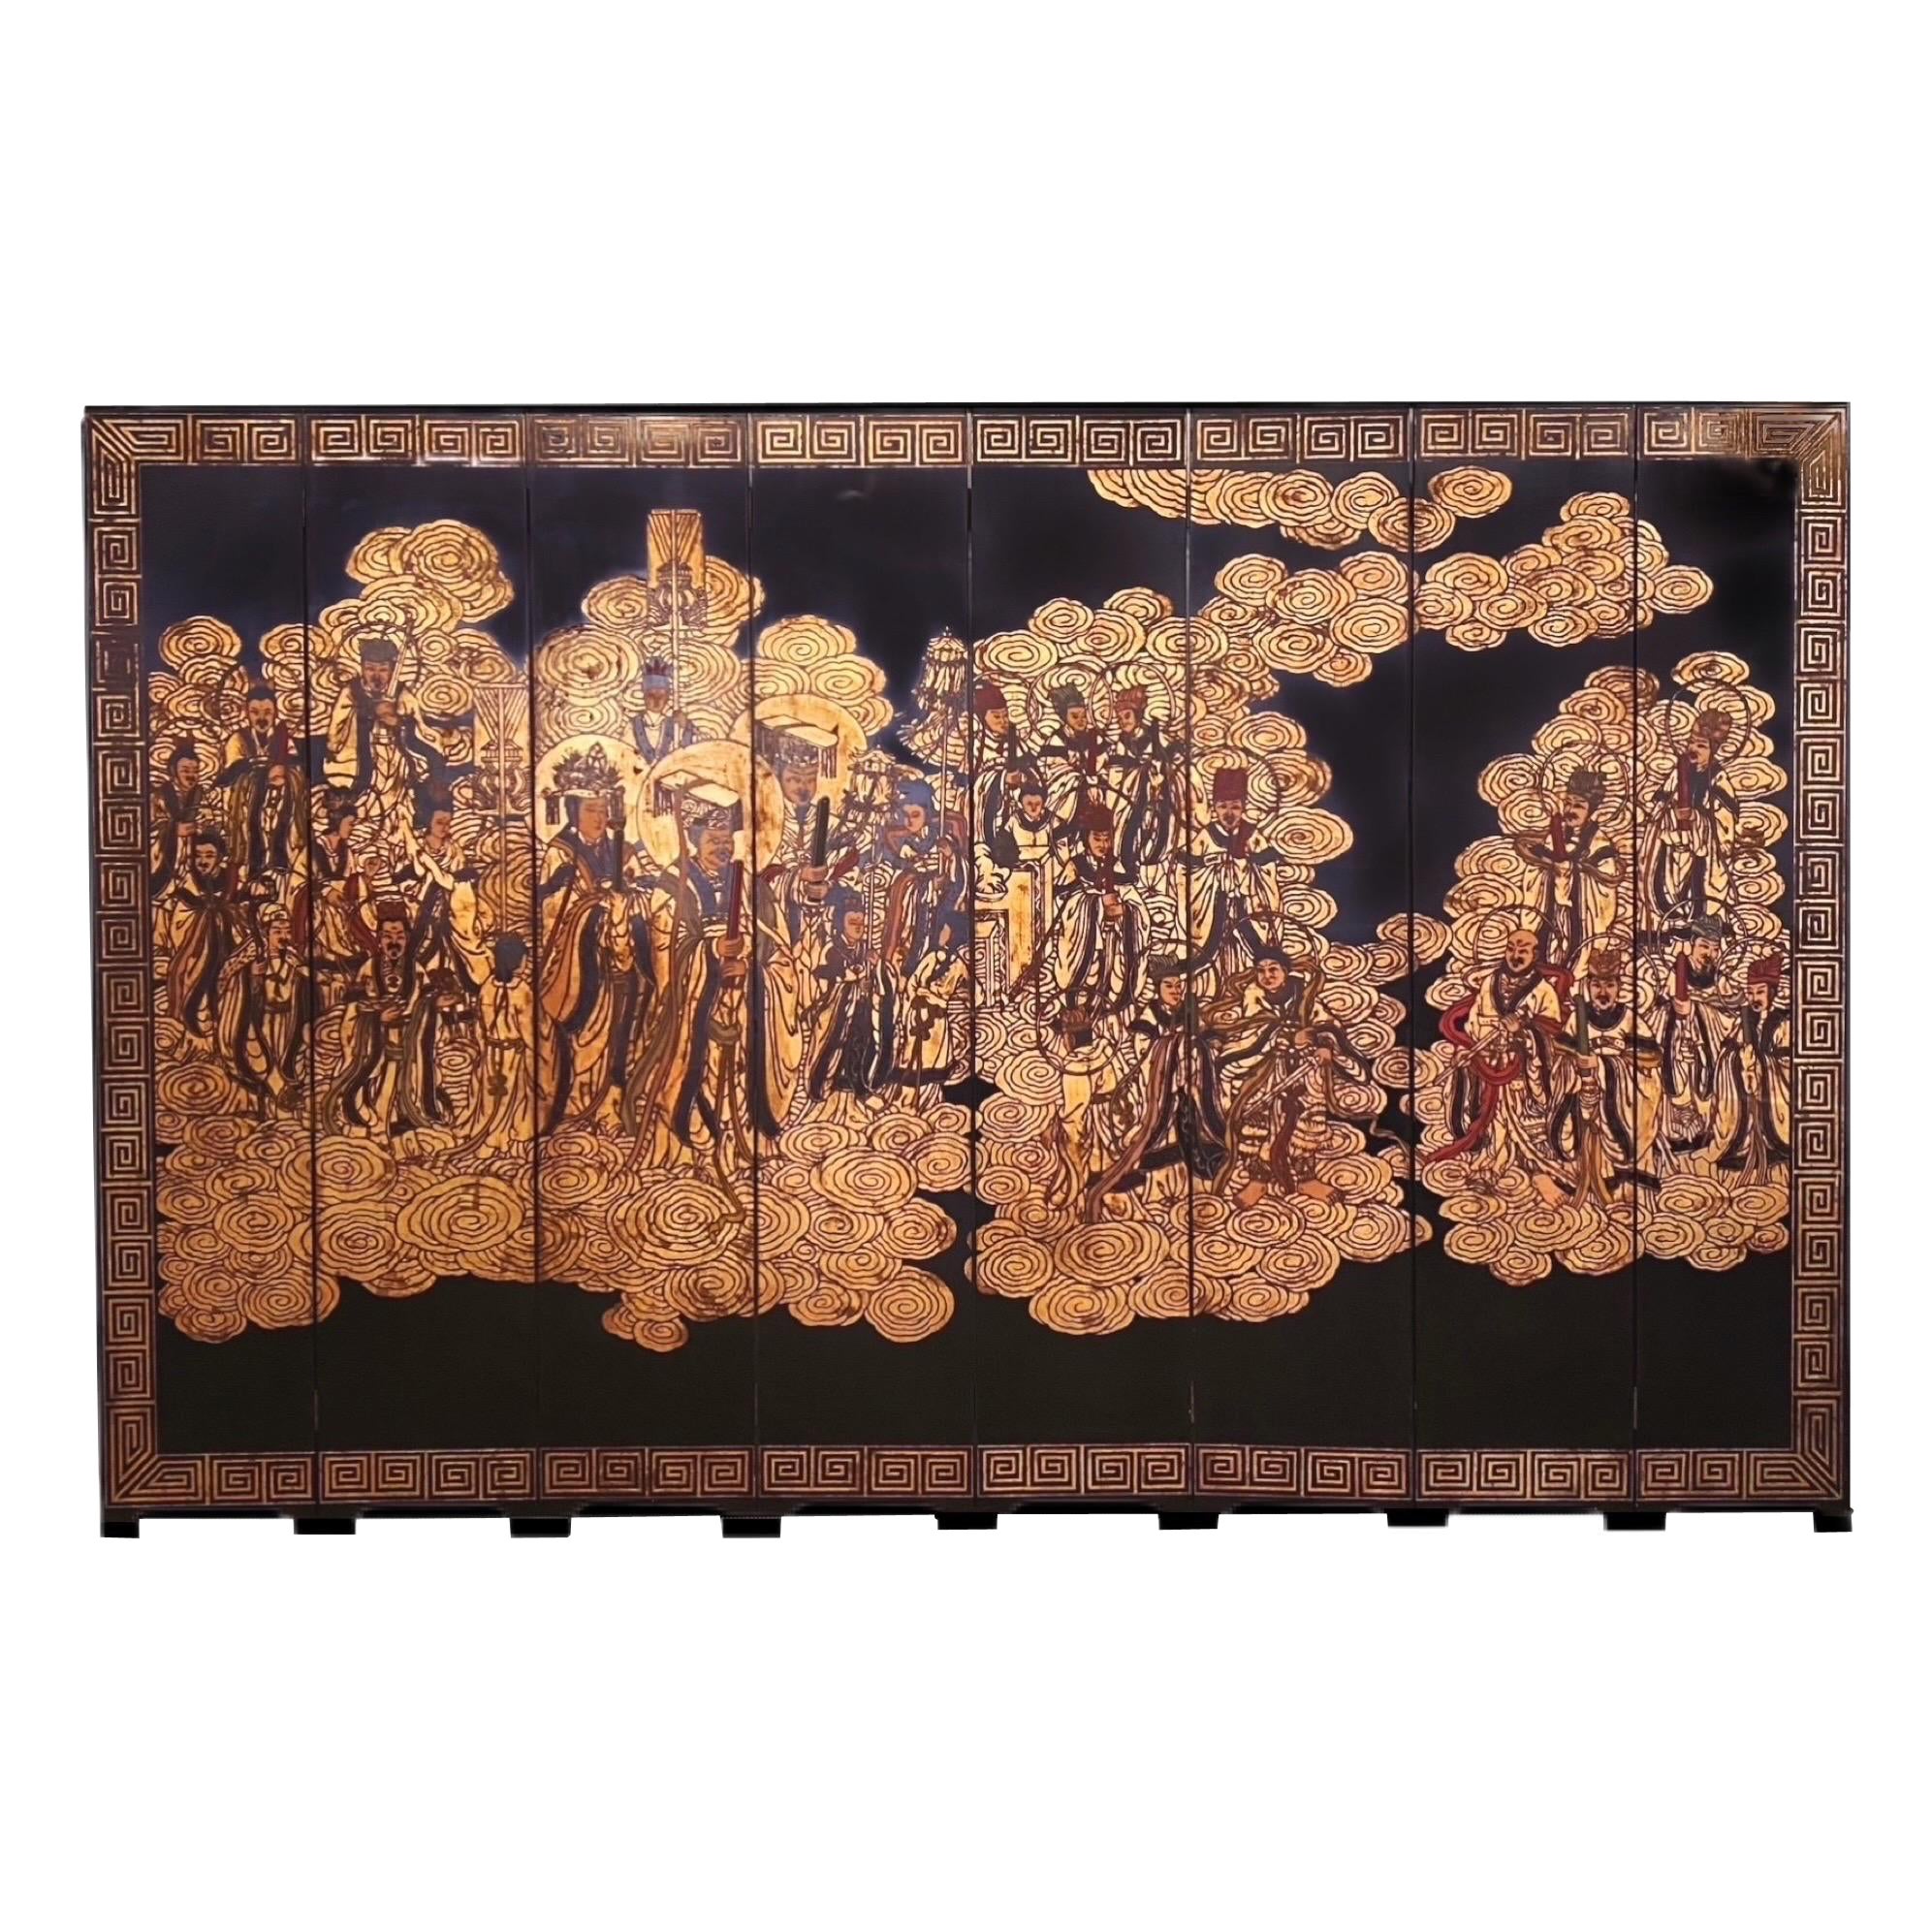 Chinesischer Coromandel-Raumteiler des 20. Jahrhunderts, schwarz vergoldet, achtteilig, unsterbliche Himmelsgöttinnen im Angebot